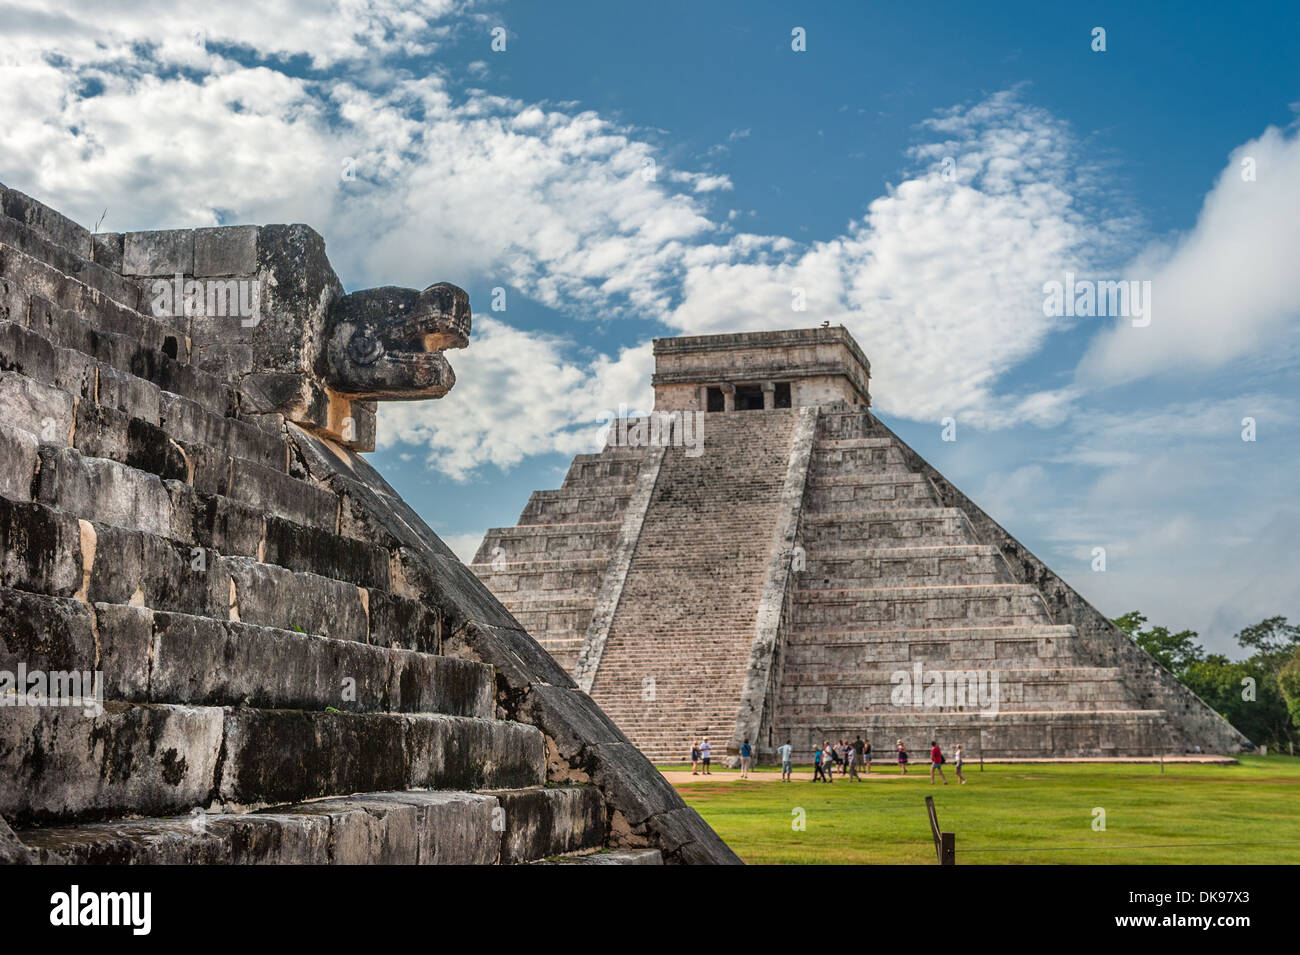 El Castillo o tempio di Kukulkan piramide, Chichen Itza, Yucatan, Messico Foto Stock